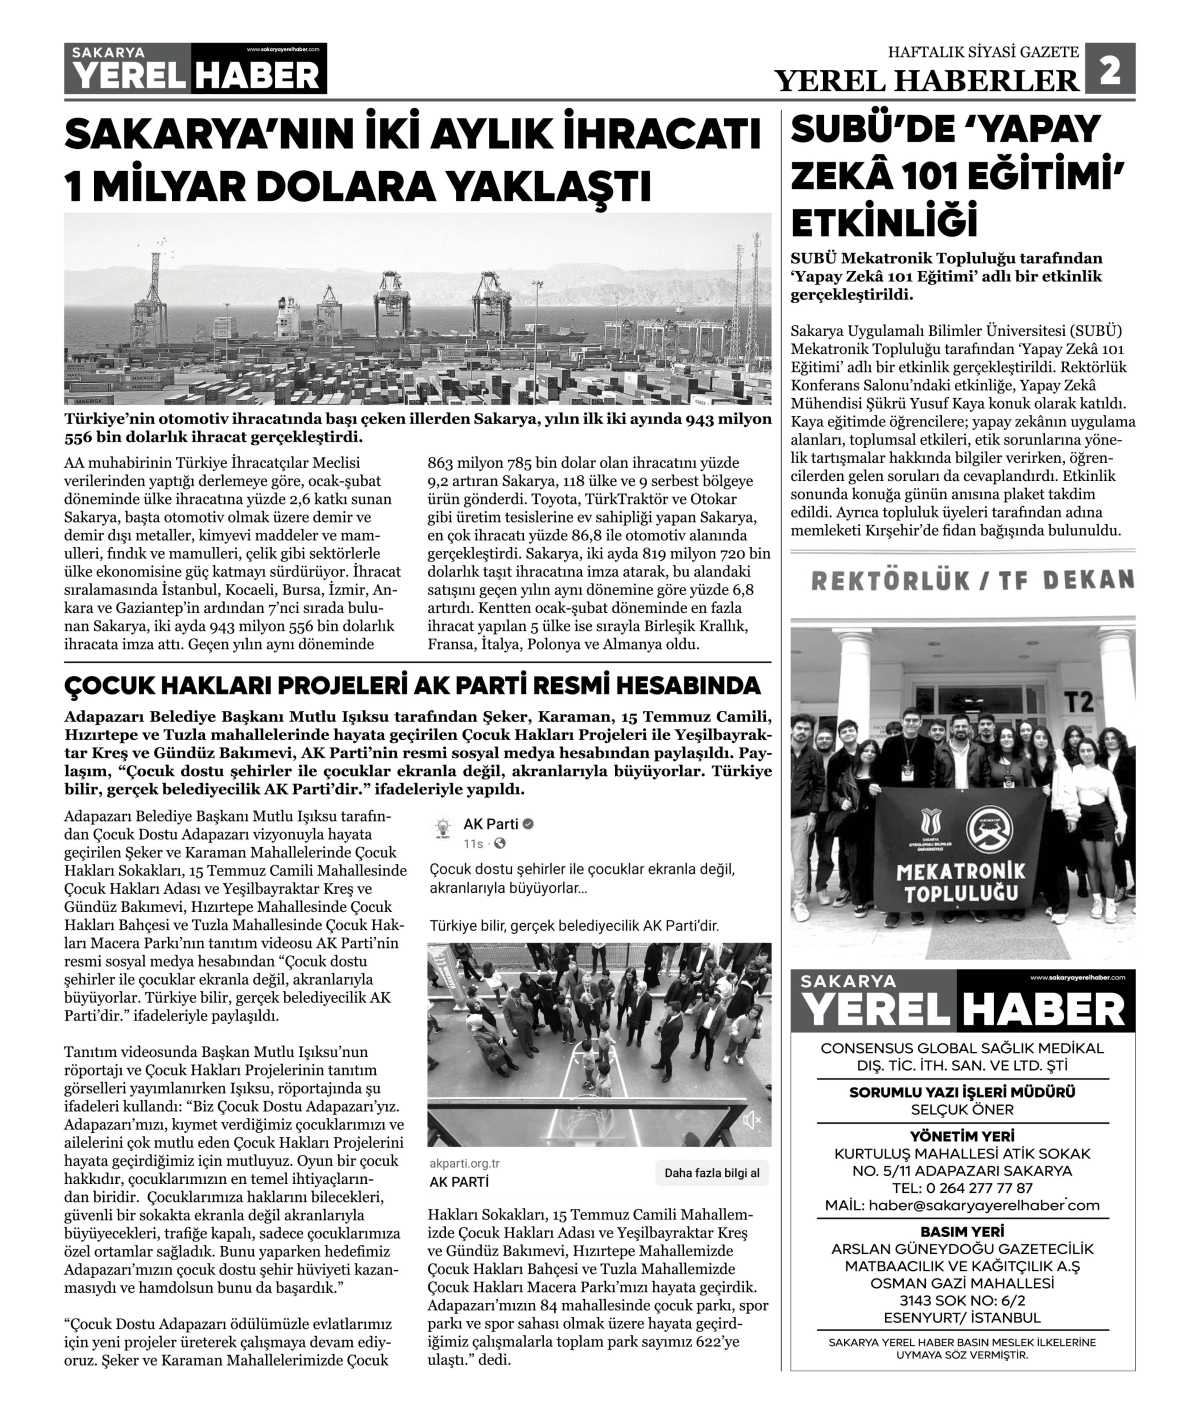 Sakarya Yerel Haber Gazetesi 46. Sayısı Çıktı